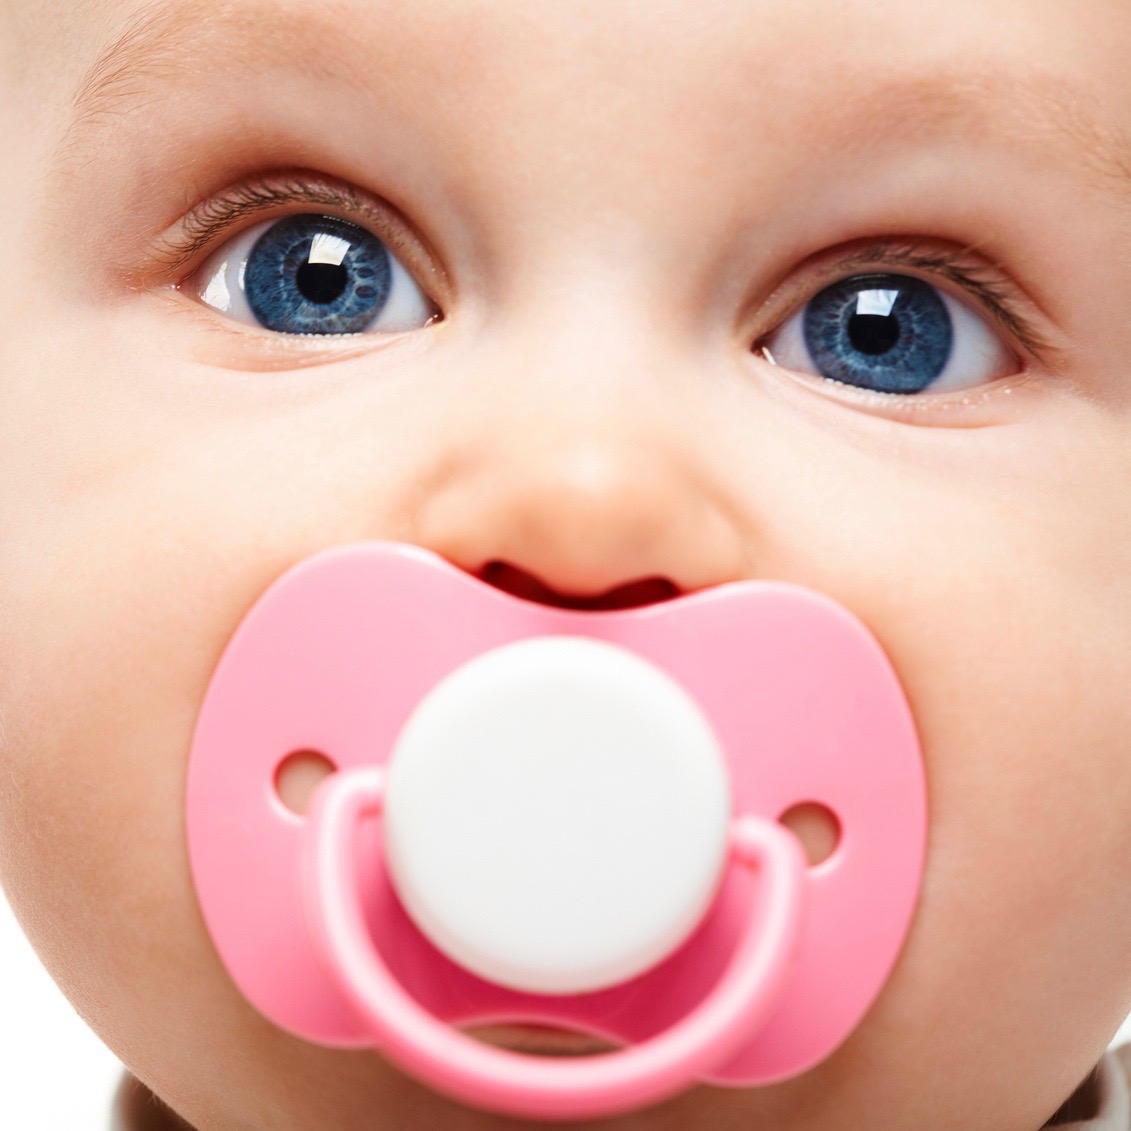 El chupete o chupón: ¿es bueno para tu bebé?